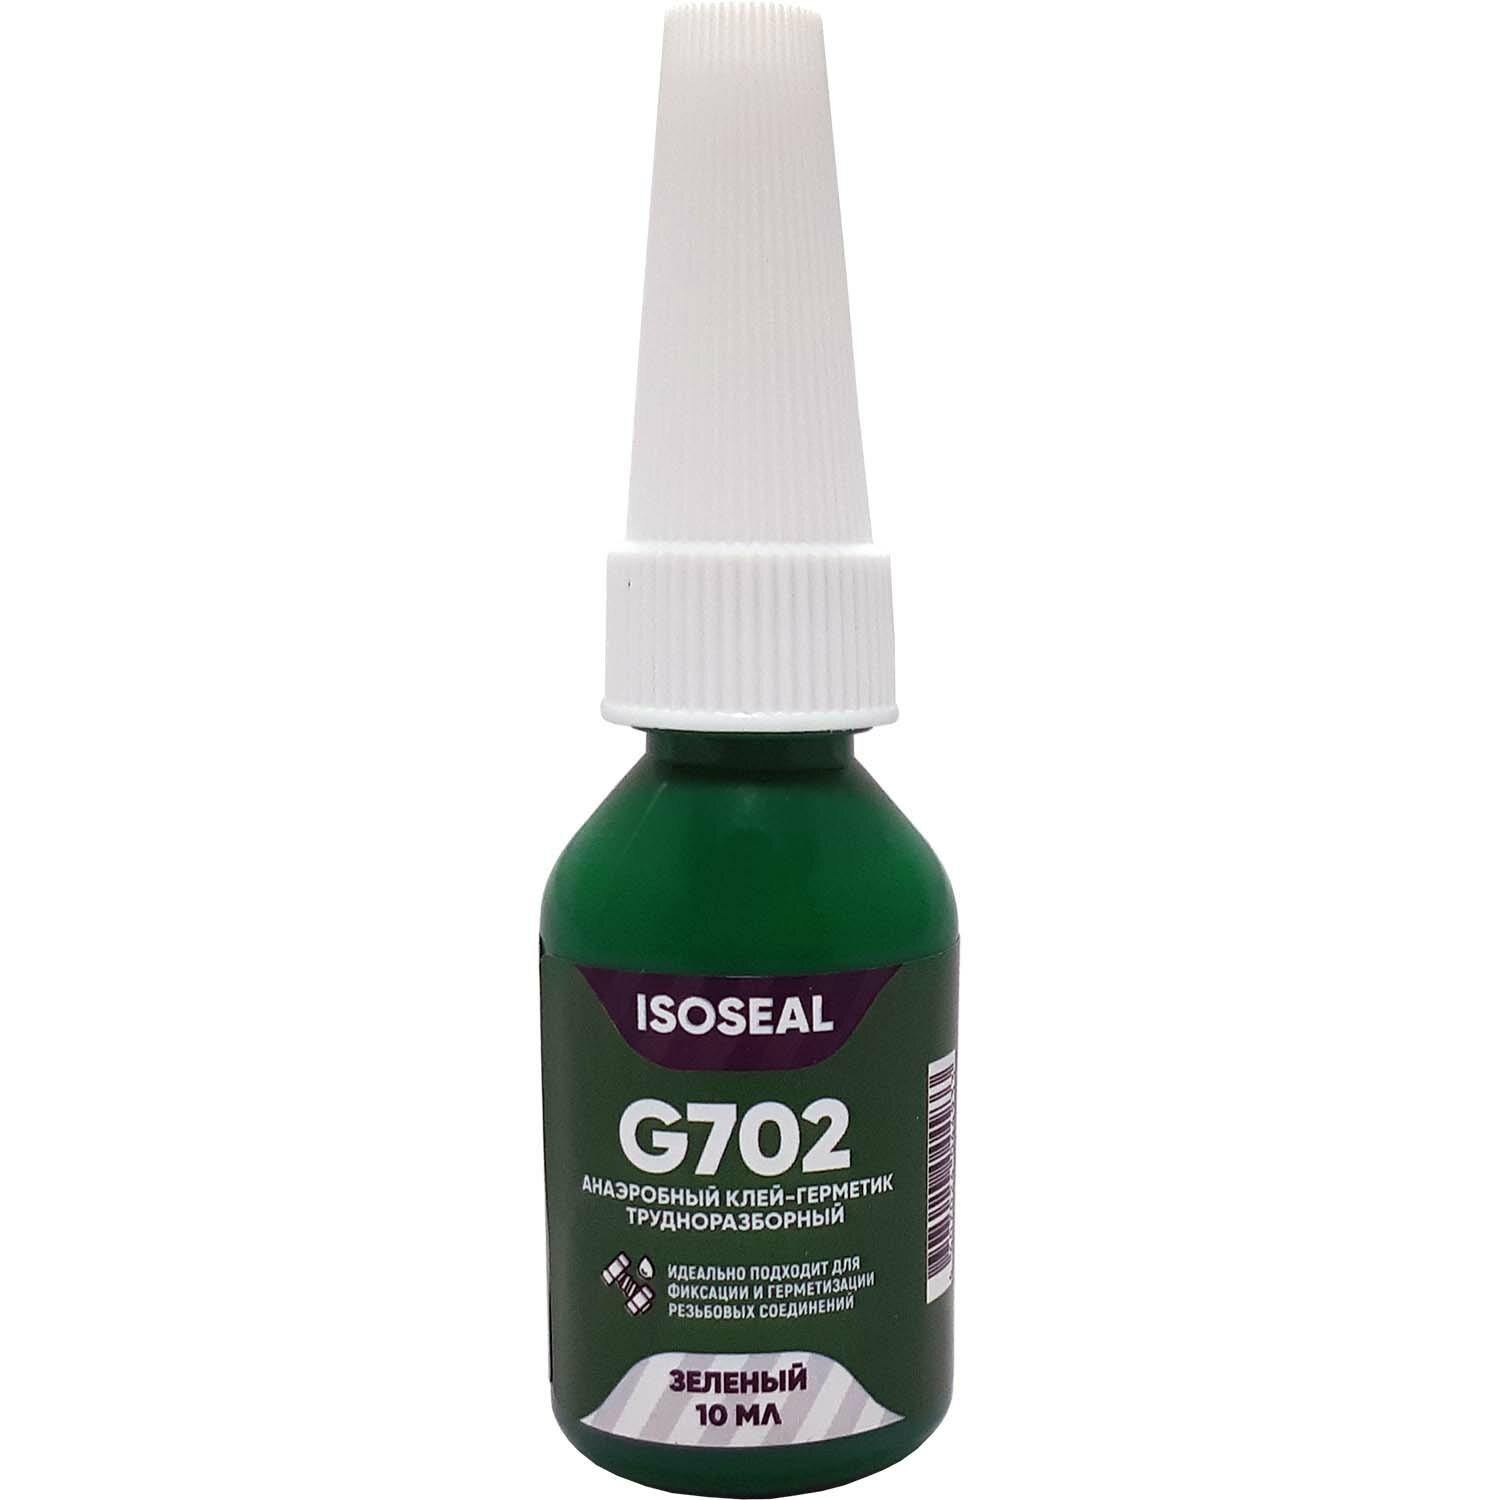 Анаэробный трудноразборный клей-герметик для резьбовых соединений ISOSEAL G702 зеленый 10 мл